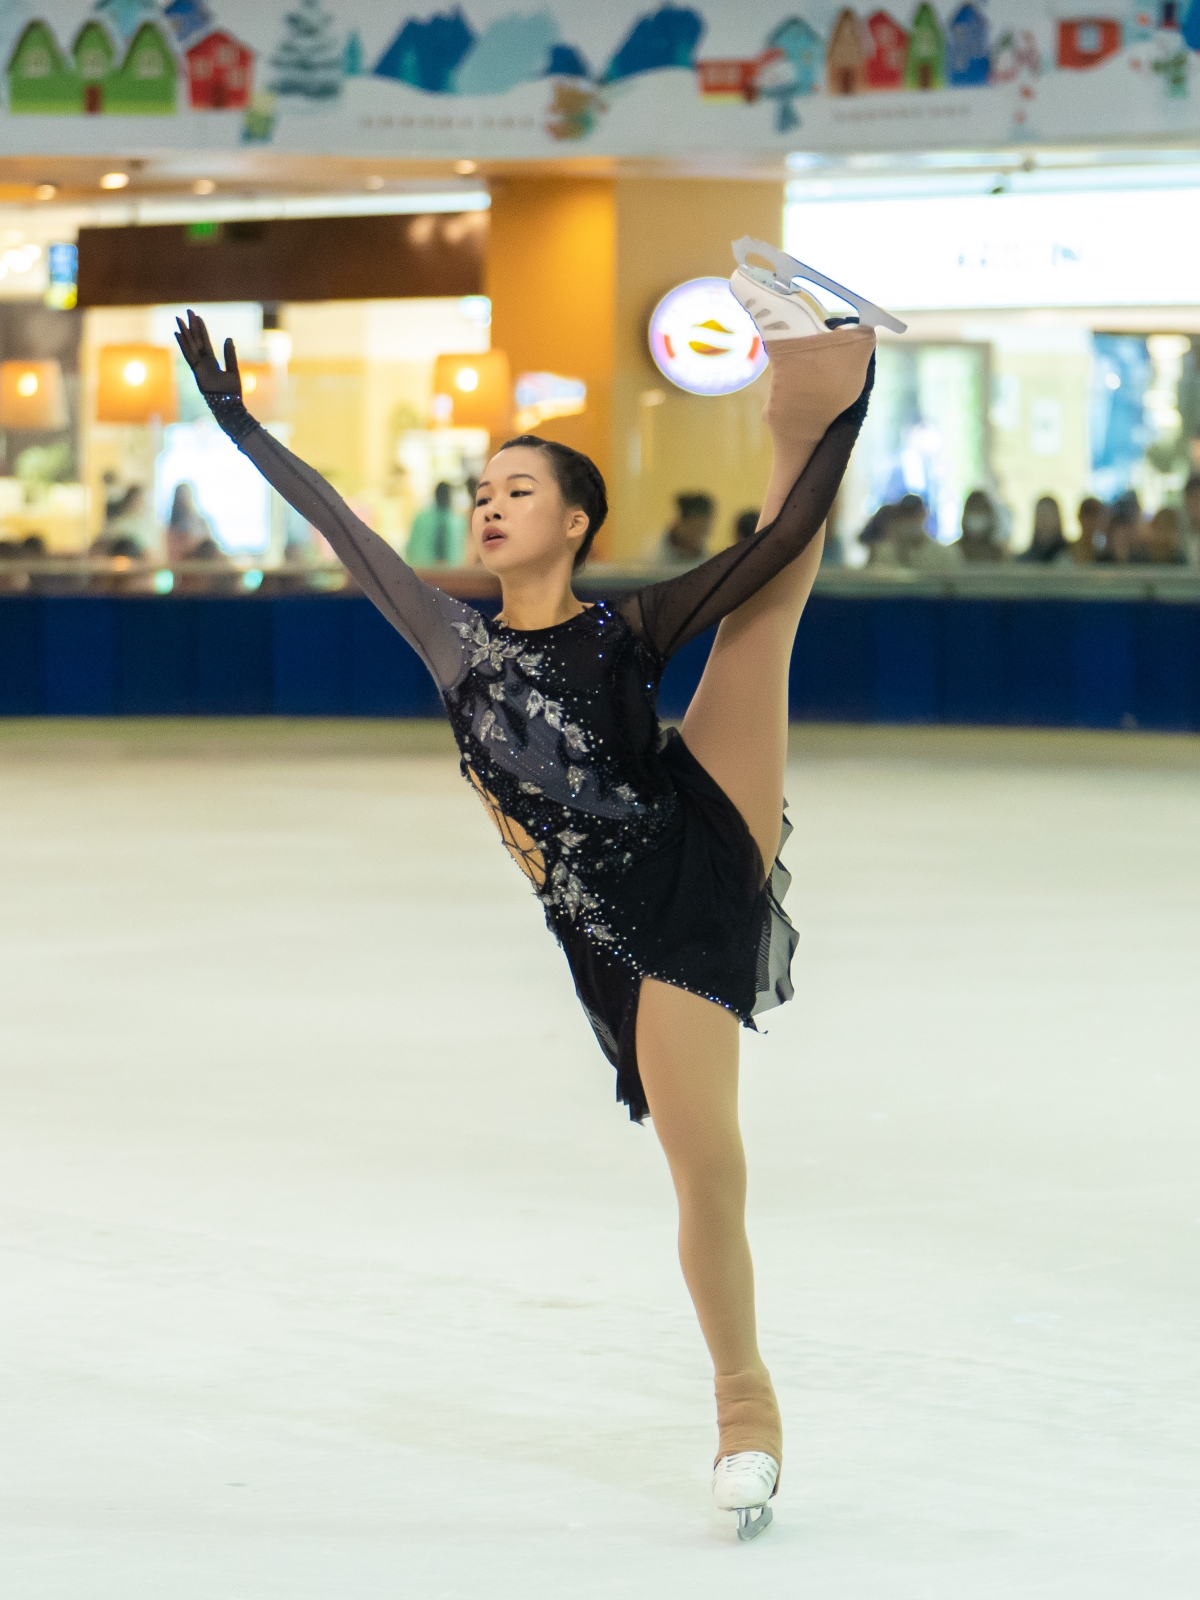 VĐV Trần Khánh Linh với bài thi tại giải Vô địch quốc gia 2022